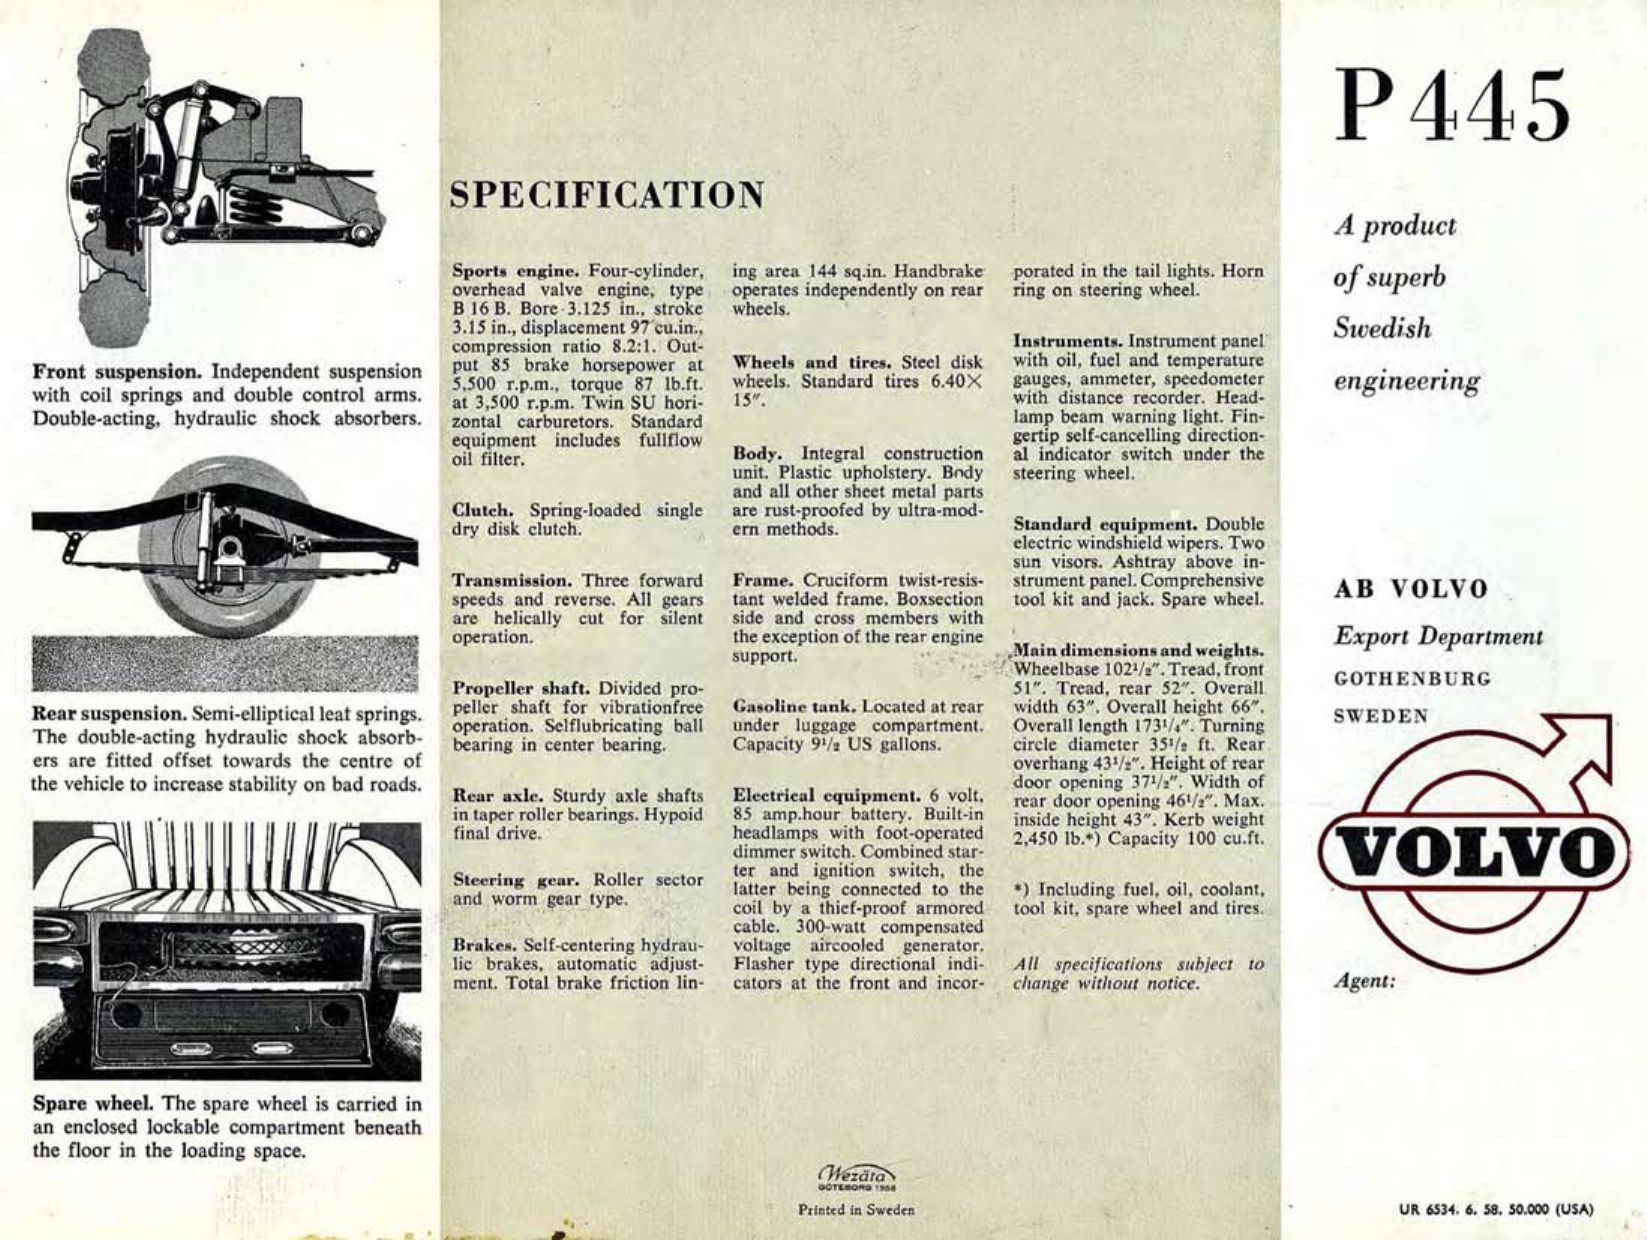 1958 Volvo P445 Brochure Page 2